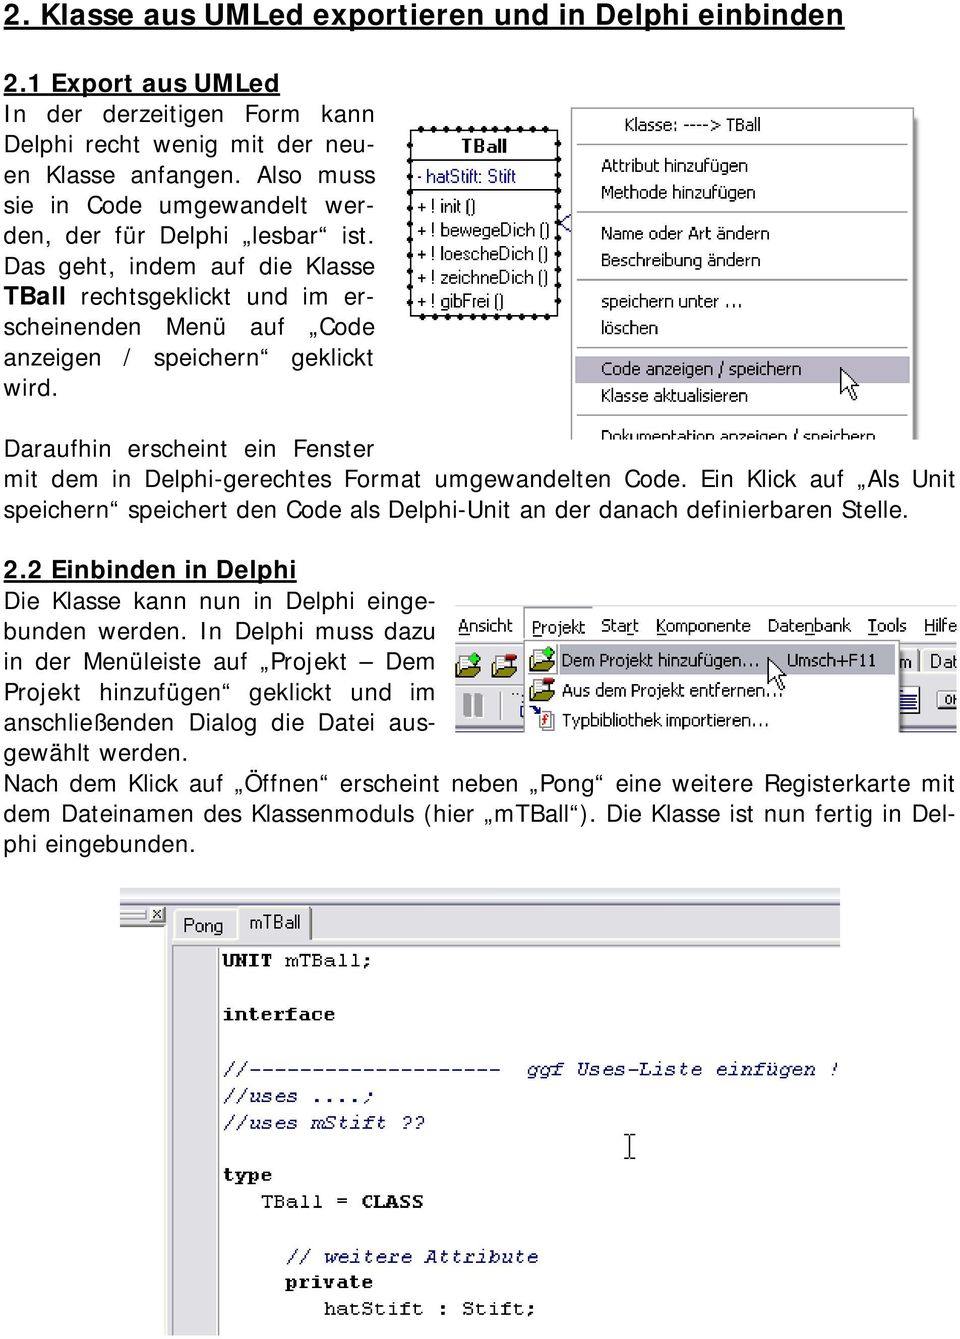 Daraufhin erscheint ein Fenster mit dem in Delphi-gerechtes Format umgewandelten Code. Ein Klick auf Als Unit speichern speichert den Code als Delphi-Unit an der danach definierbaren Stelle. 2.